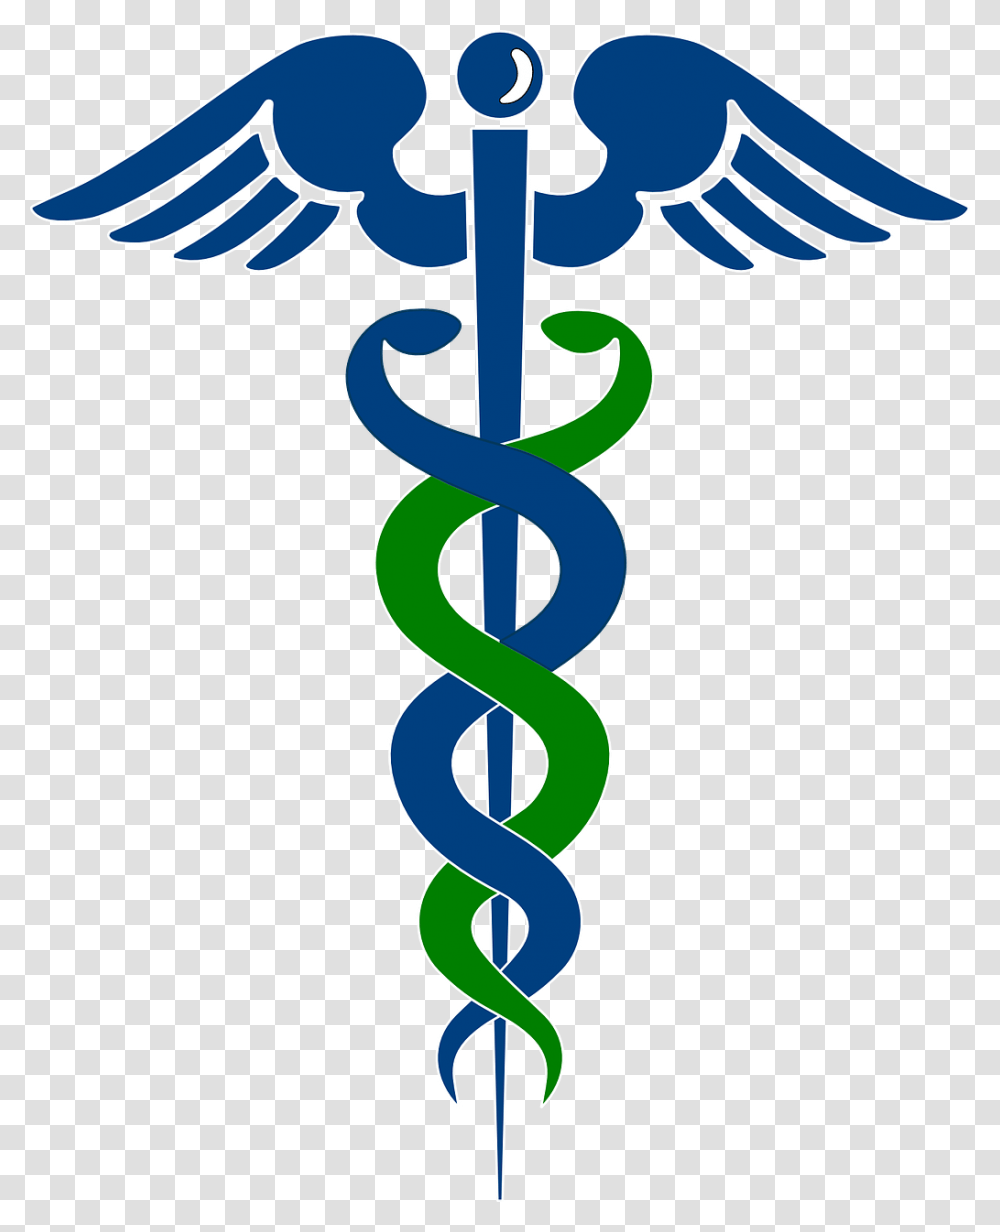 Physician Assistant Clip Art, Logo, Trademark, Emblem Transparent Png